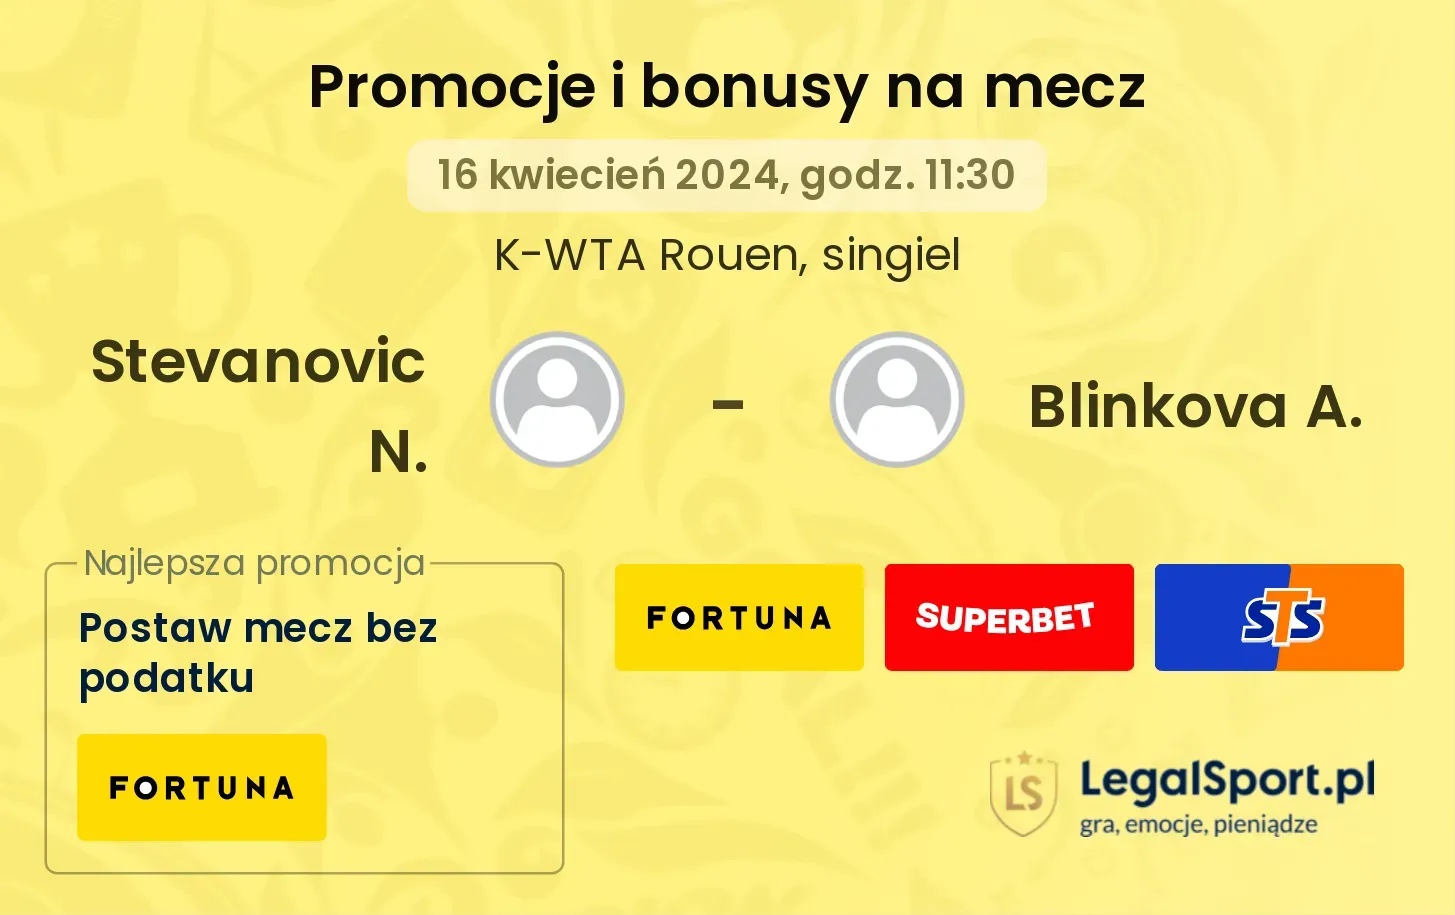 Stevanovic N. - Blinkova A. promocje bonusy na mecz